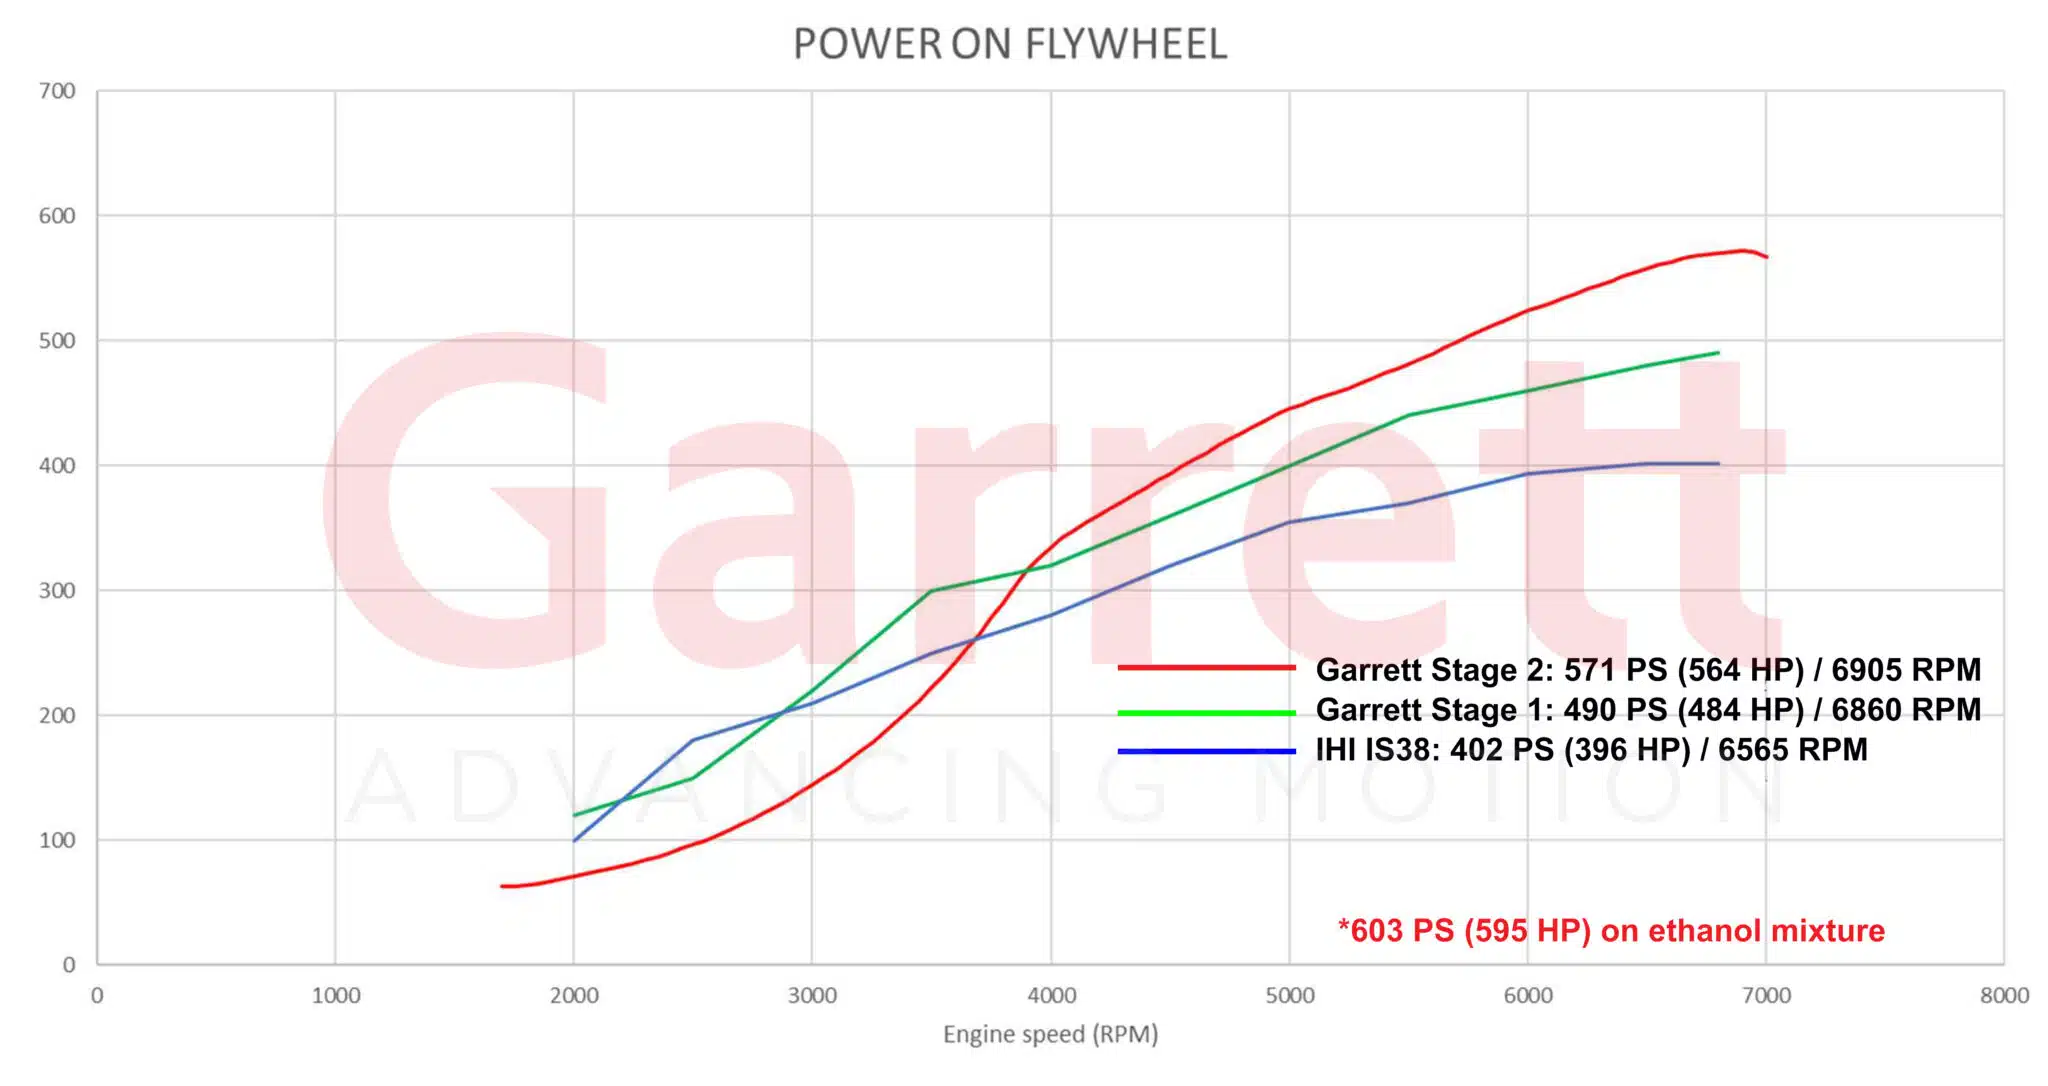 Garrett Performance PowerMax 14 18 Power scaled